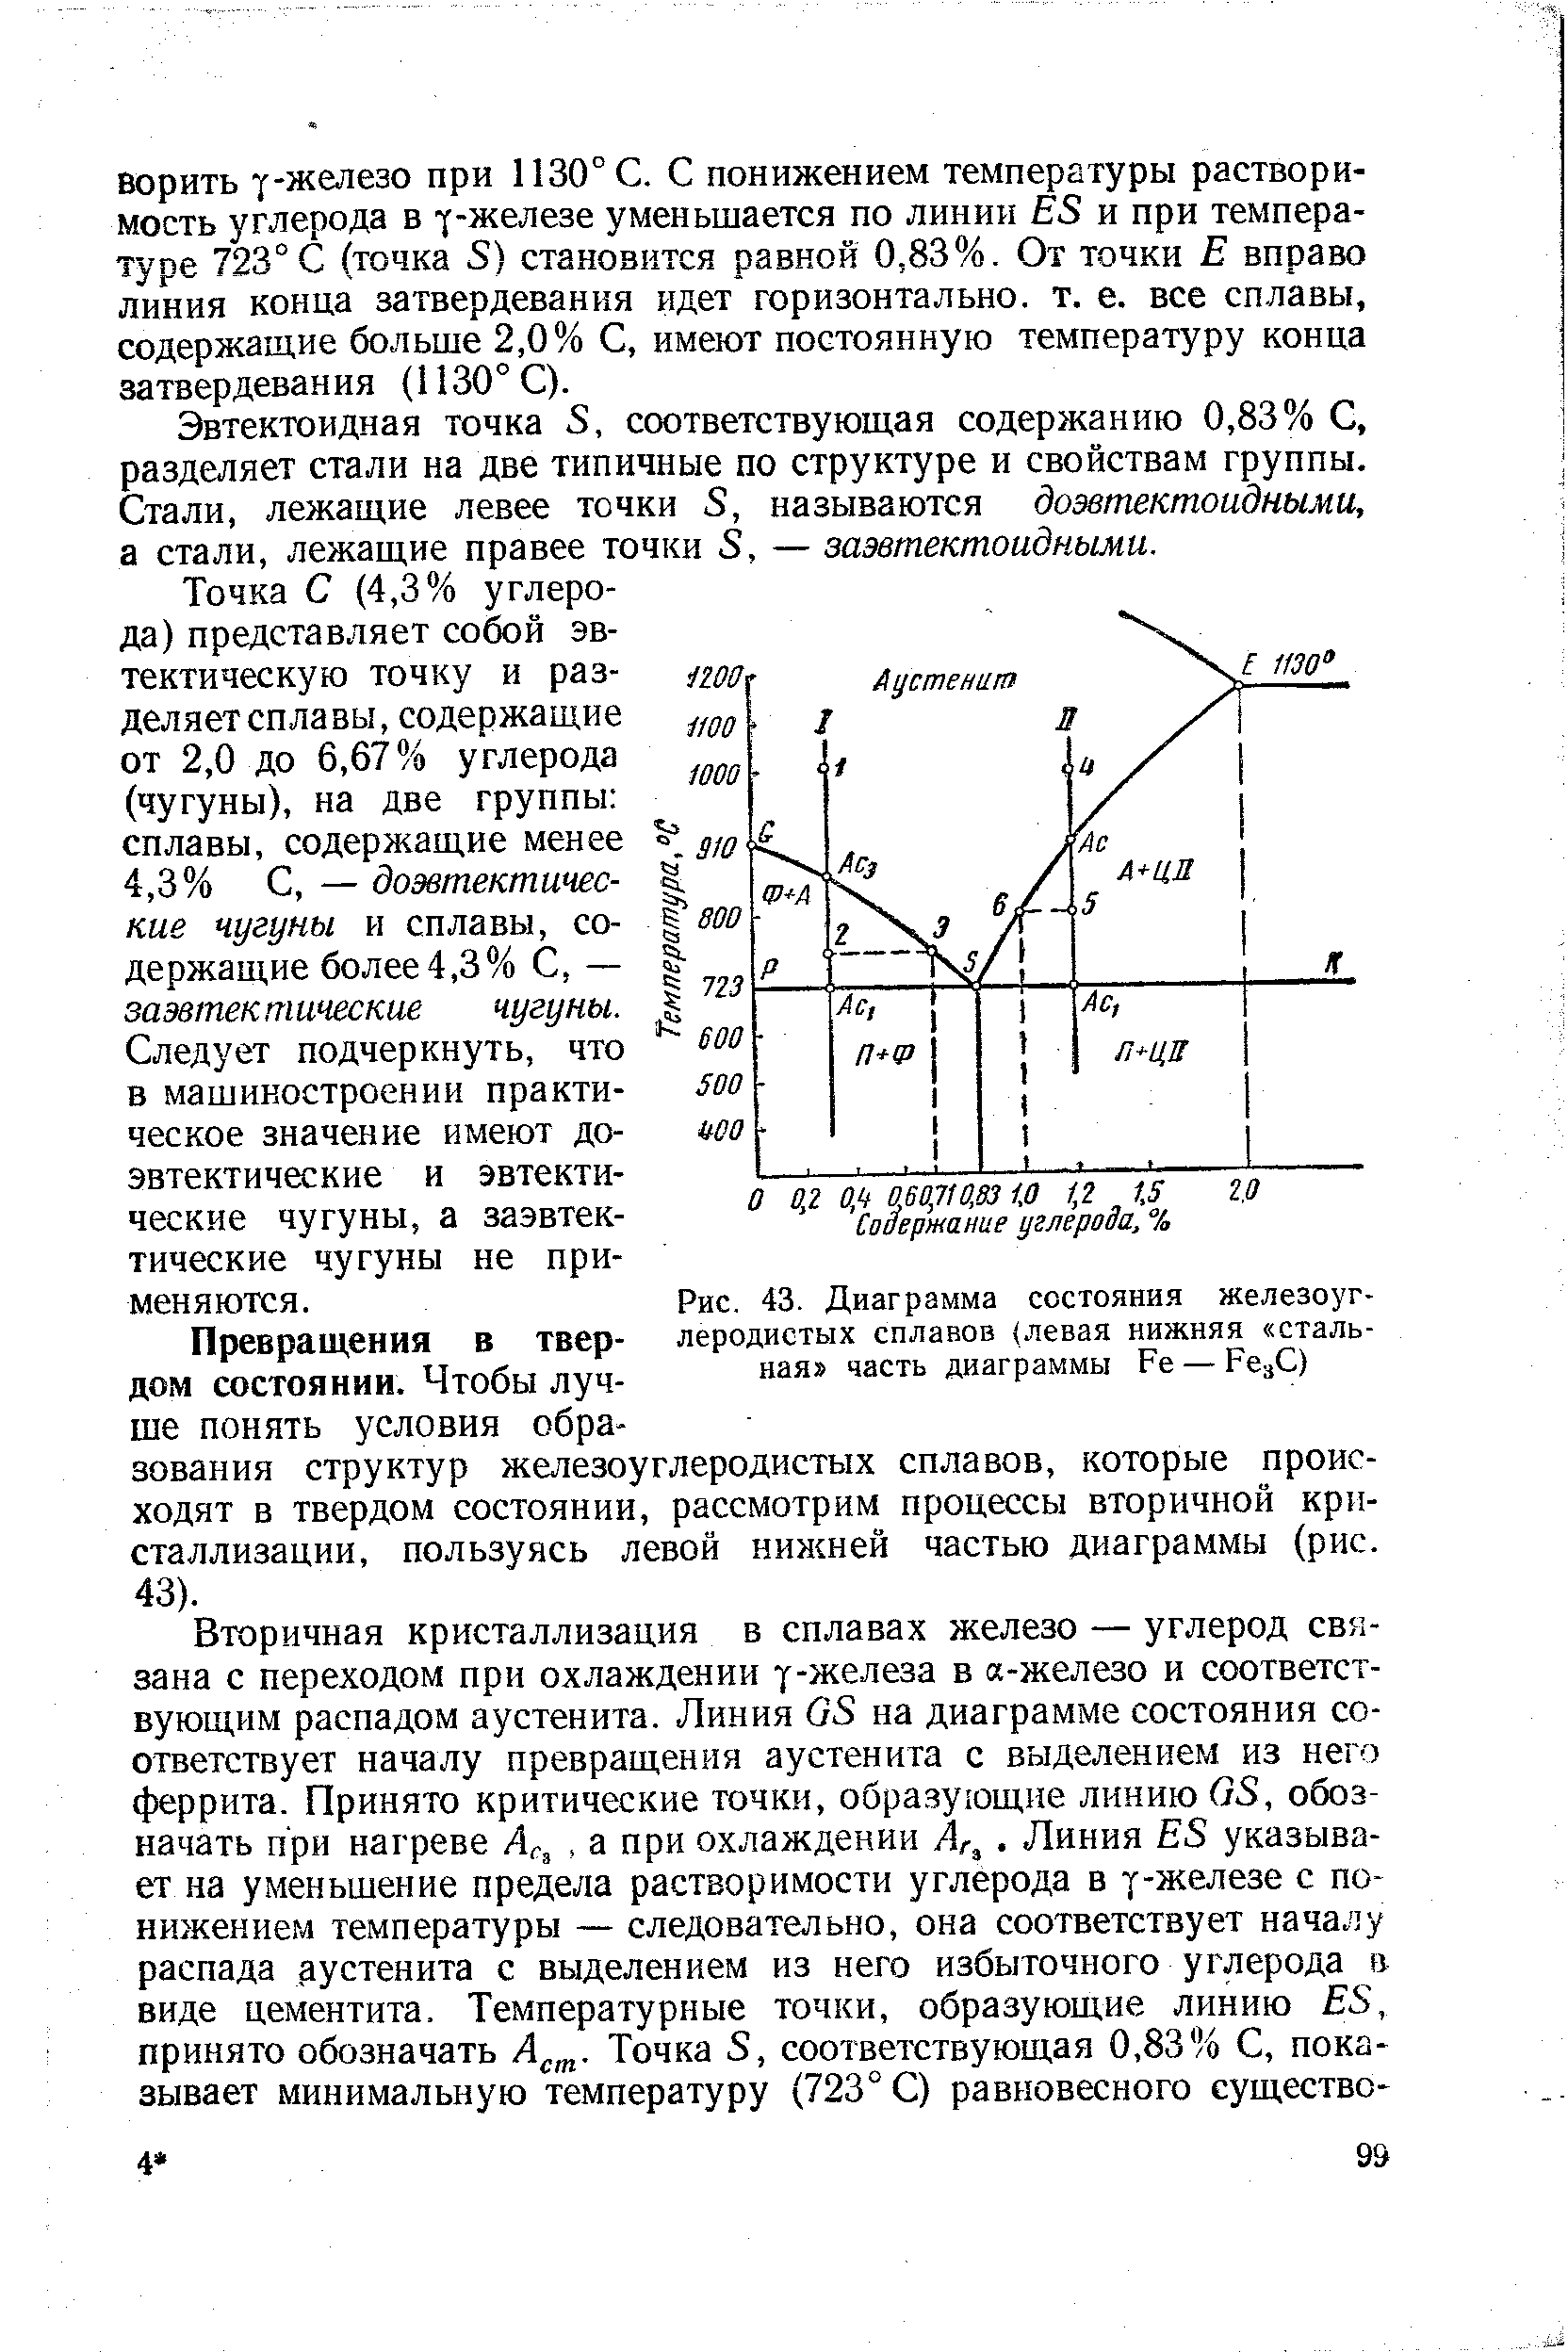 Рис. 43. Диаграмма состояния железоуглеродистых сплавов (левая нижняя стальная часть диаграммы Ре — Ре С)
